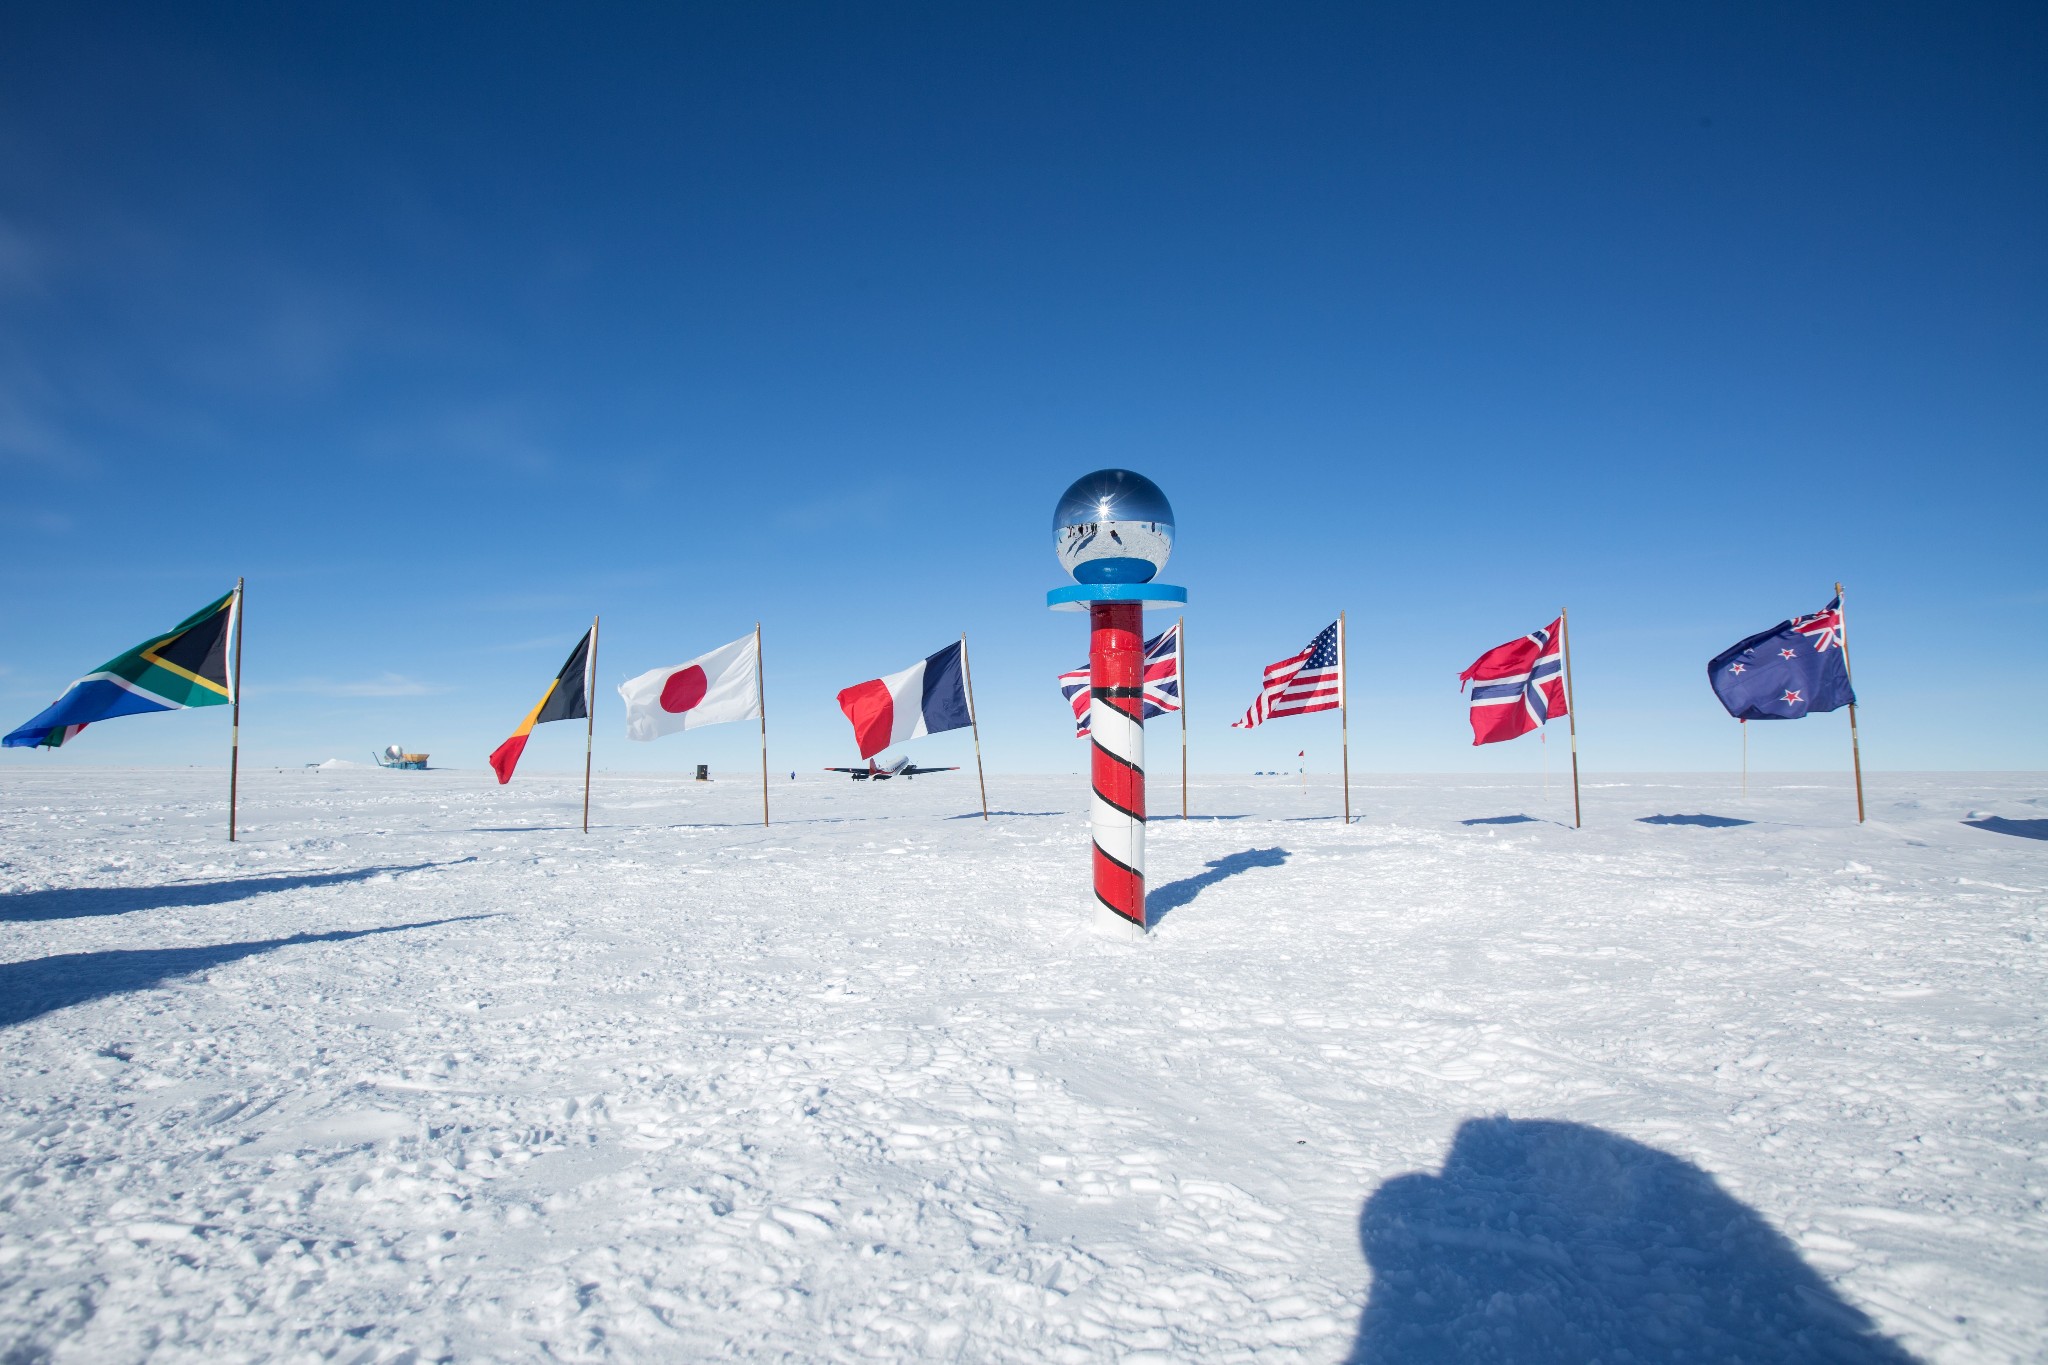 极地远征南极点,赴一场与帝企鹅的约会